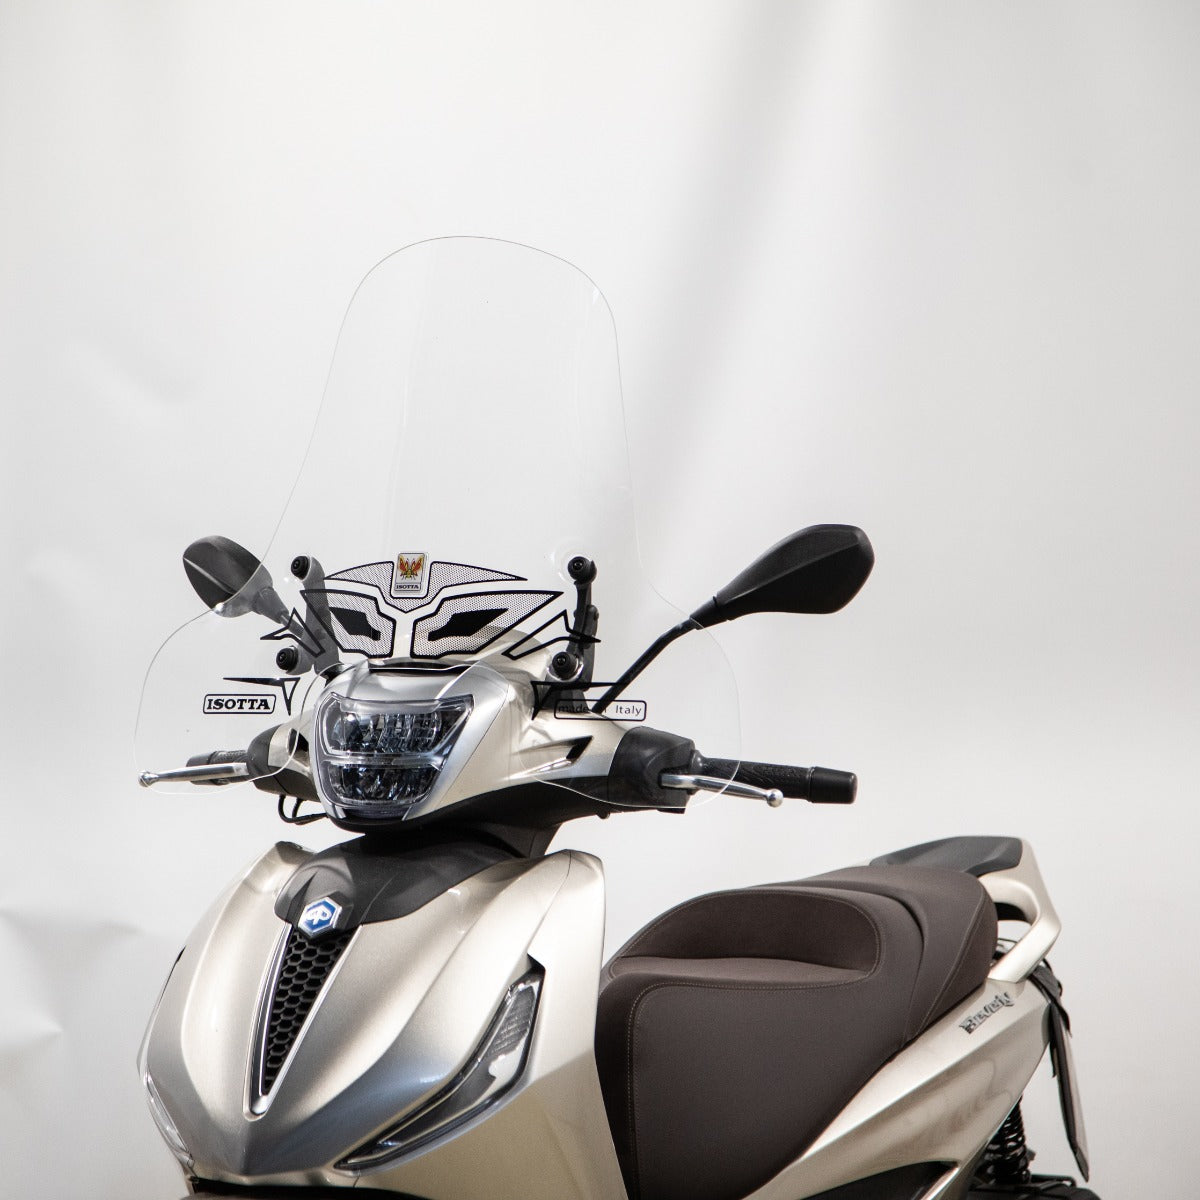 Parabrezza per moto e scooter, vendita online ad ottimi prezzi